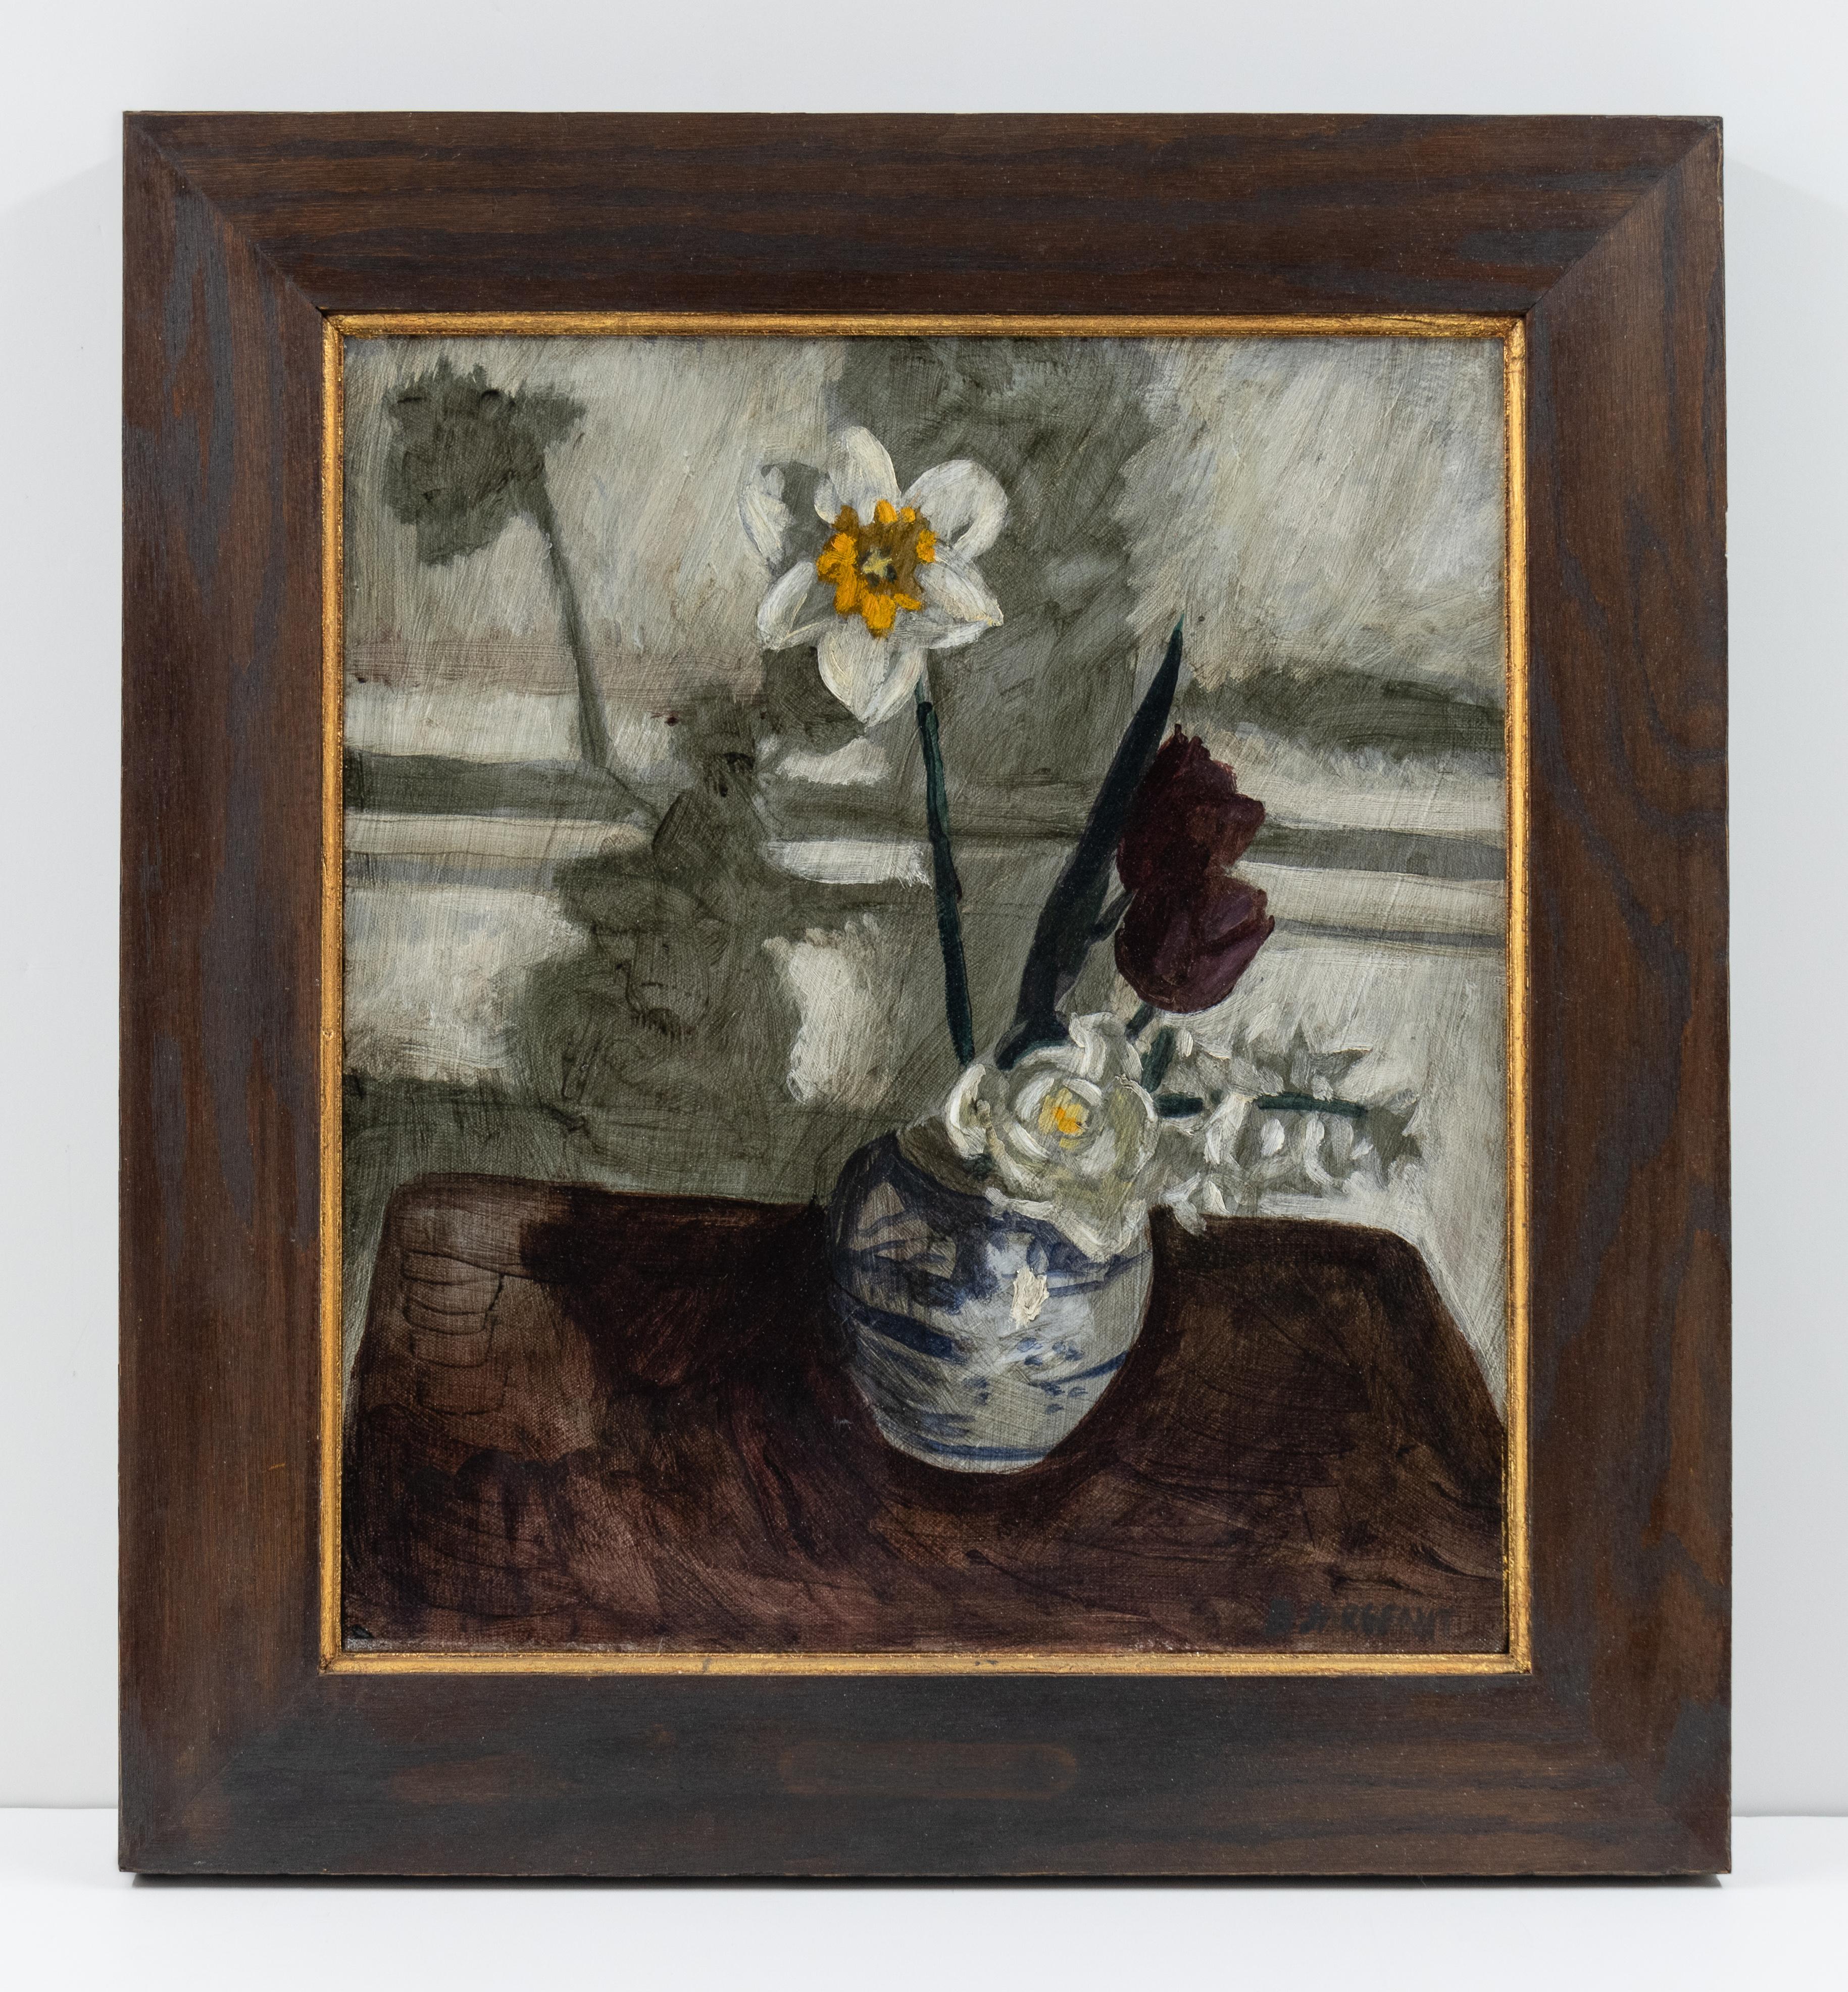  Bruce Sargeant (1898-1938) - Nature morte de fleurs - Contemporain Painting par Mark Beard